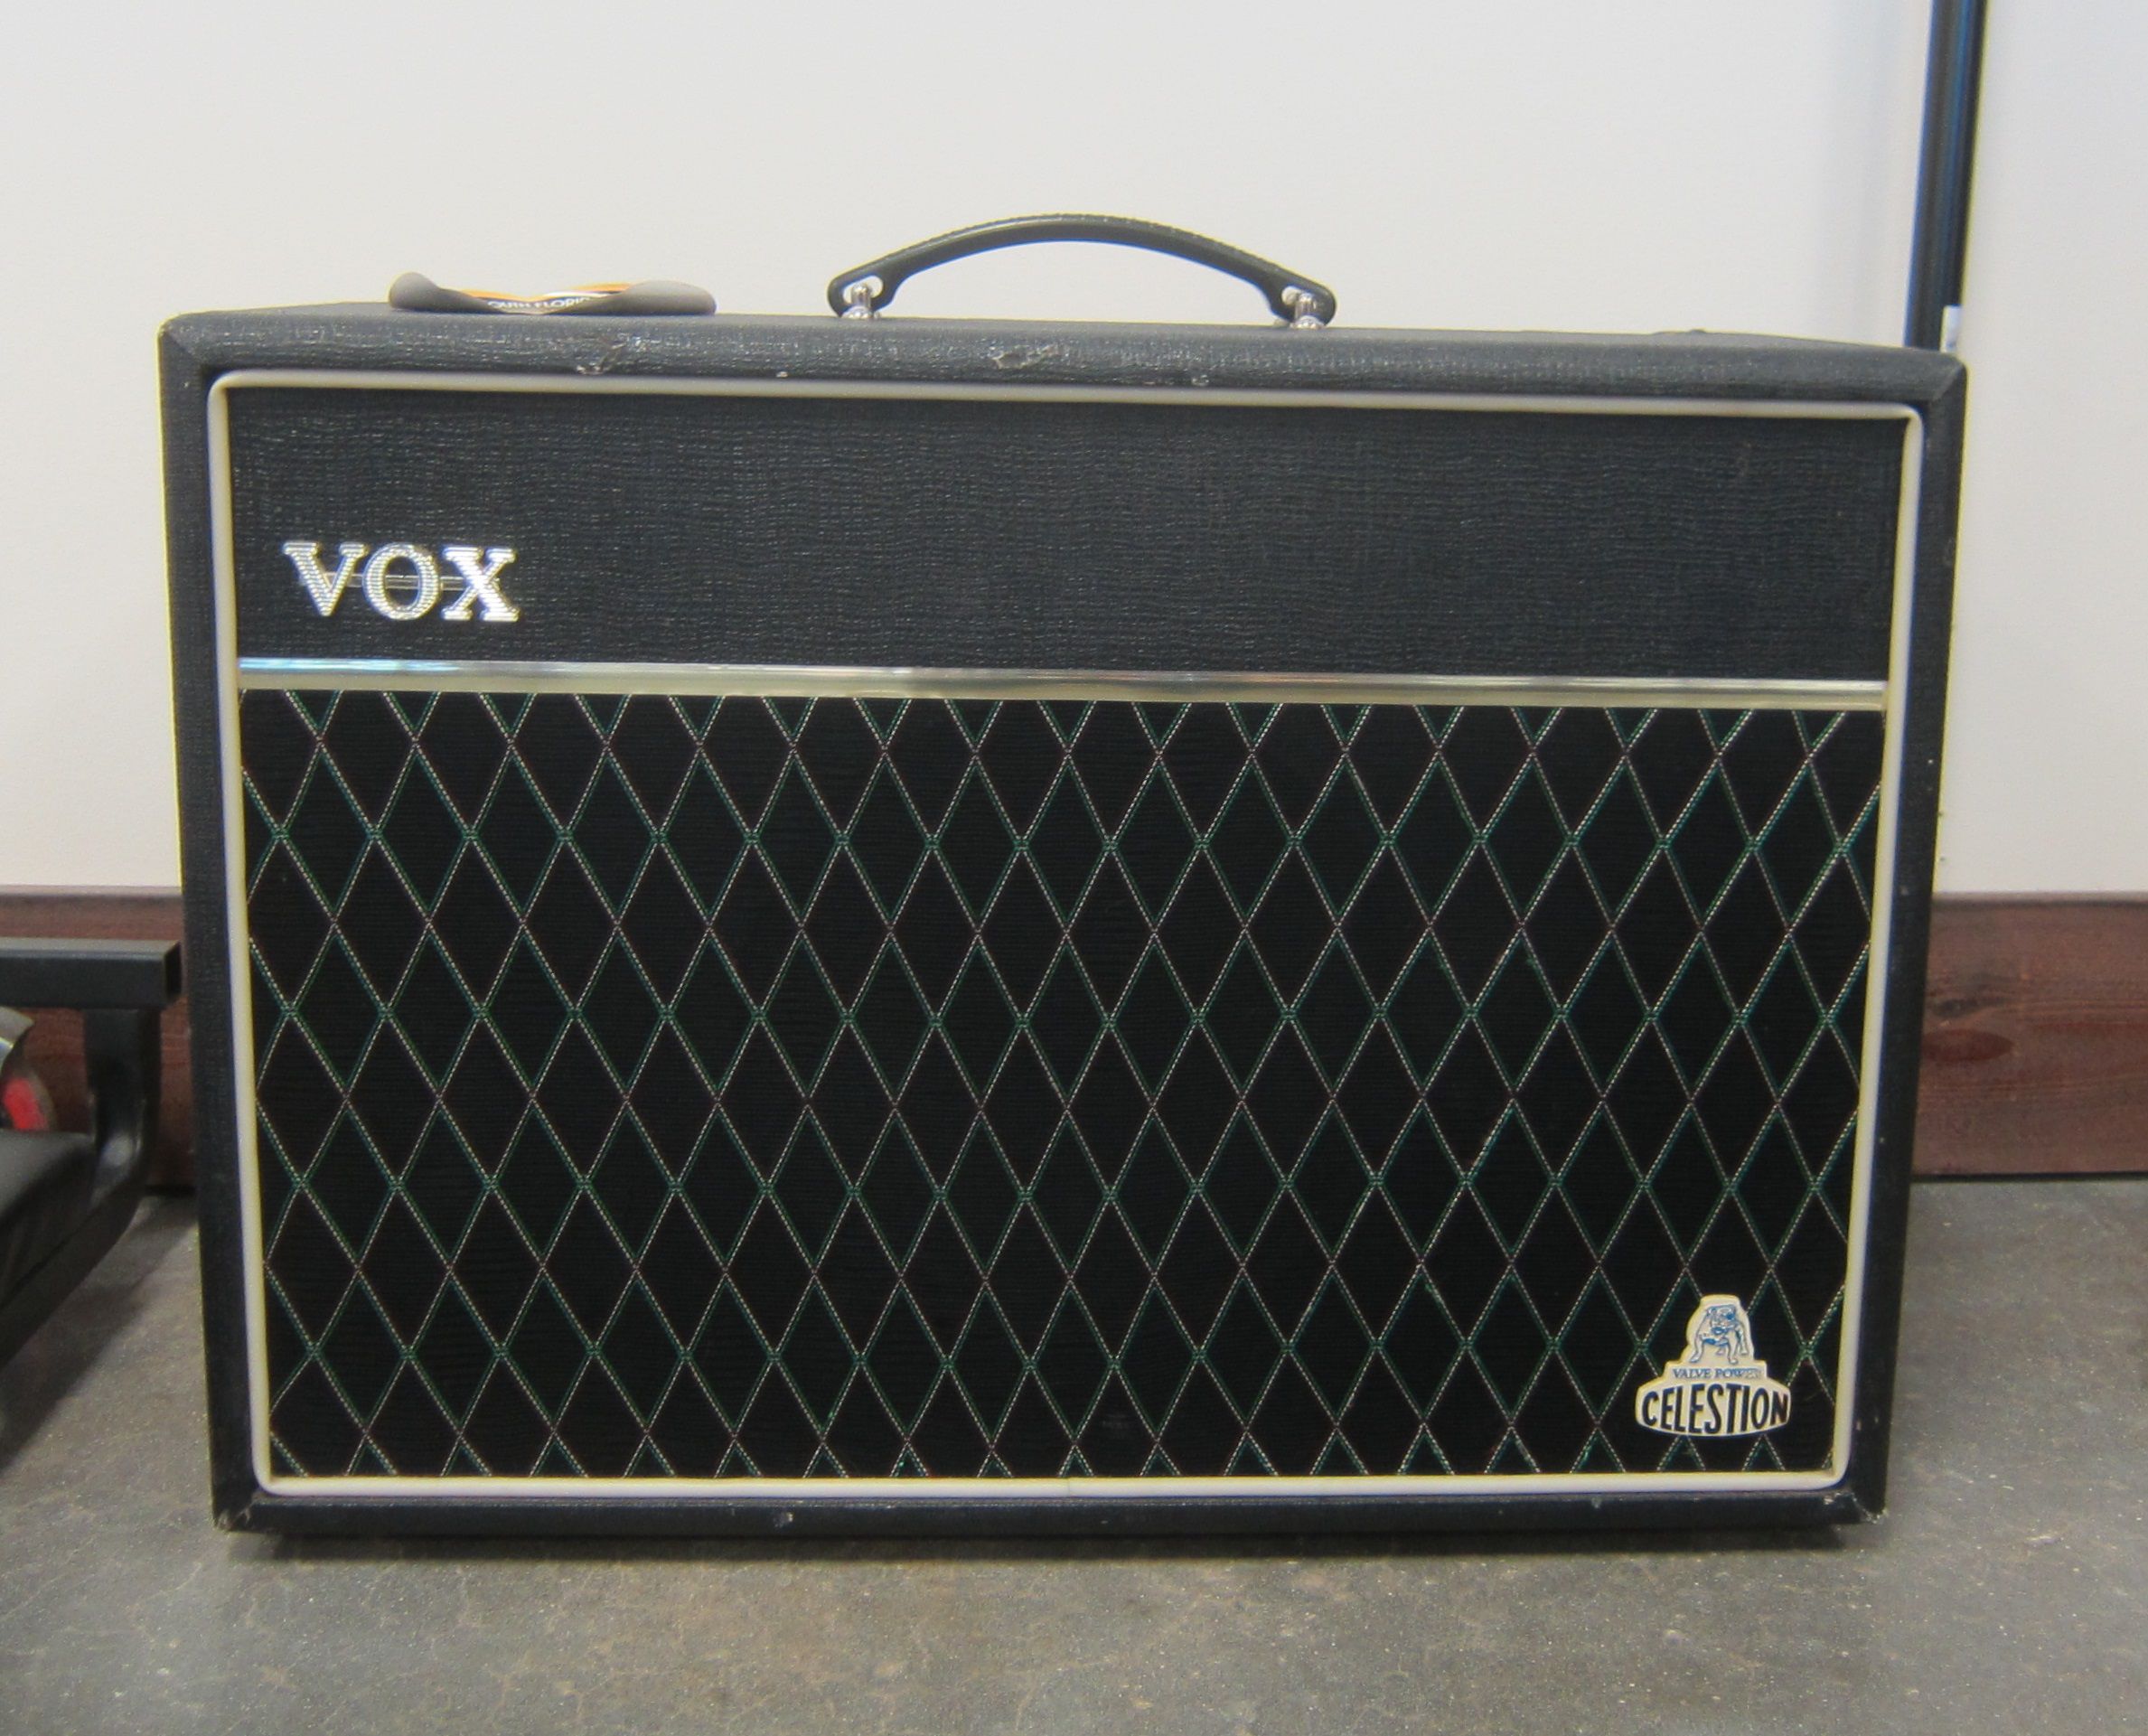 Vox guitar amp Cambridge 30 reverb